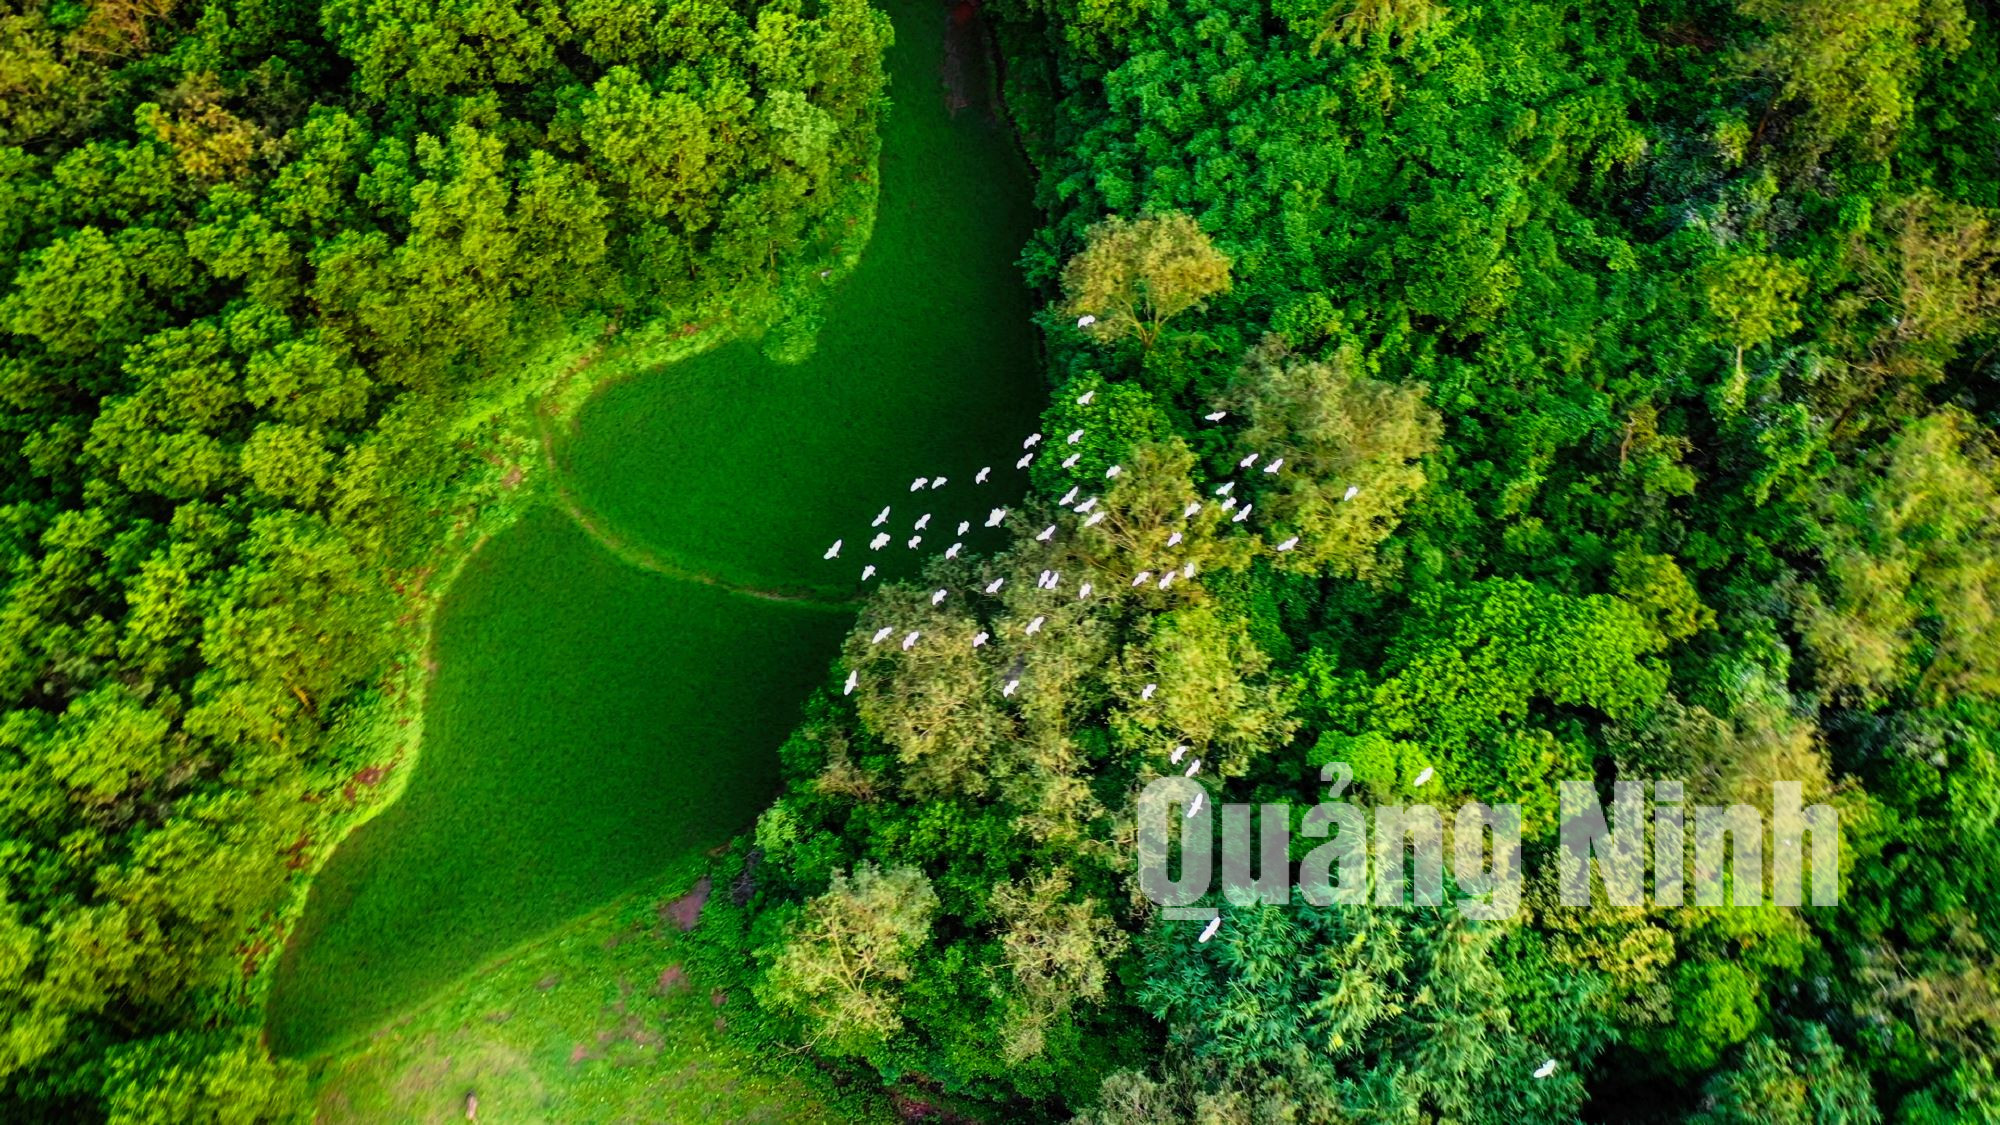 Cánh cò trắng bay trên rừng cây xanh ở núi Núi Hứa làm đẹp thêm bức tranh làng quê.